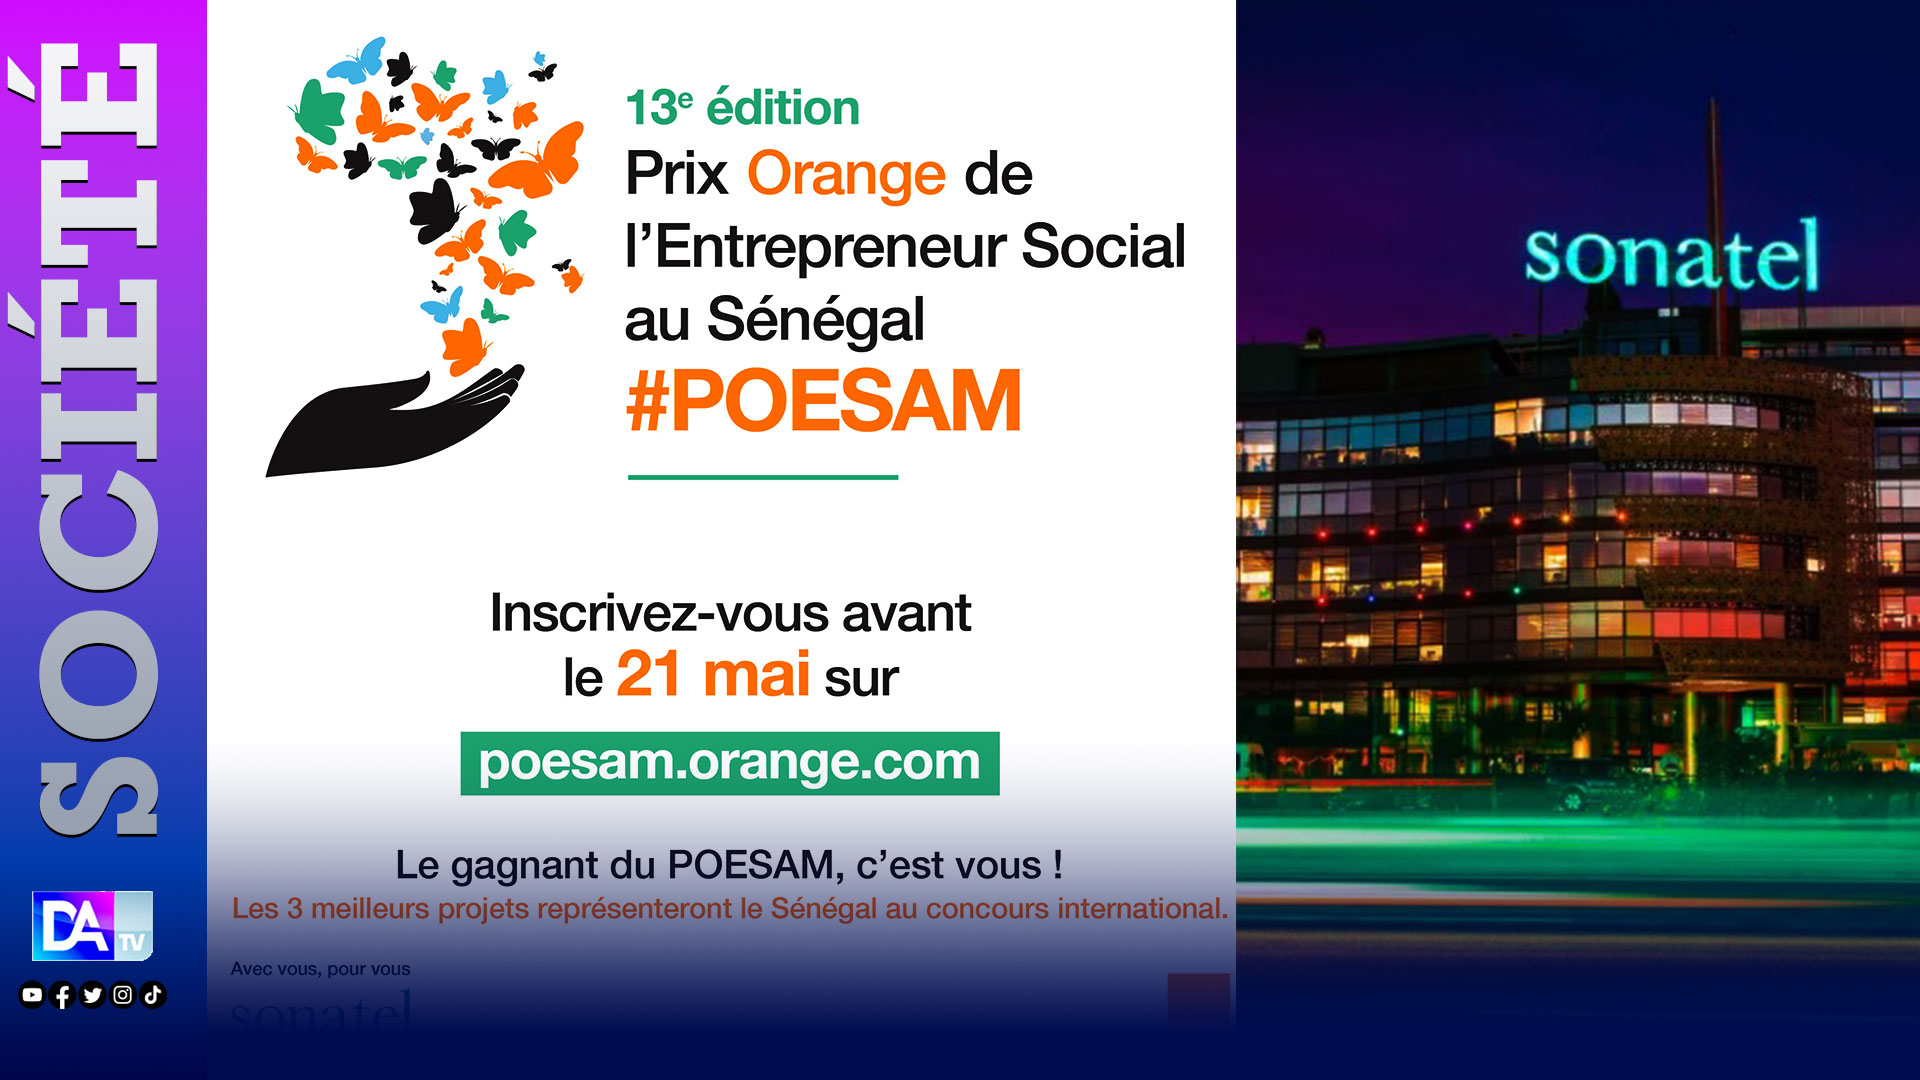 13ème édition du POESAM : La Sonatel met 16 millions FCFA pour promouvoir l’innovation sociale.